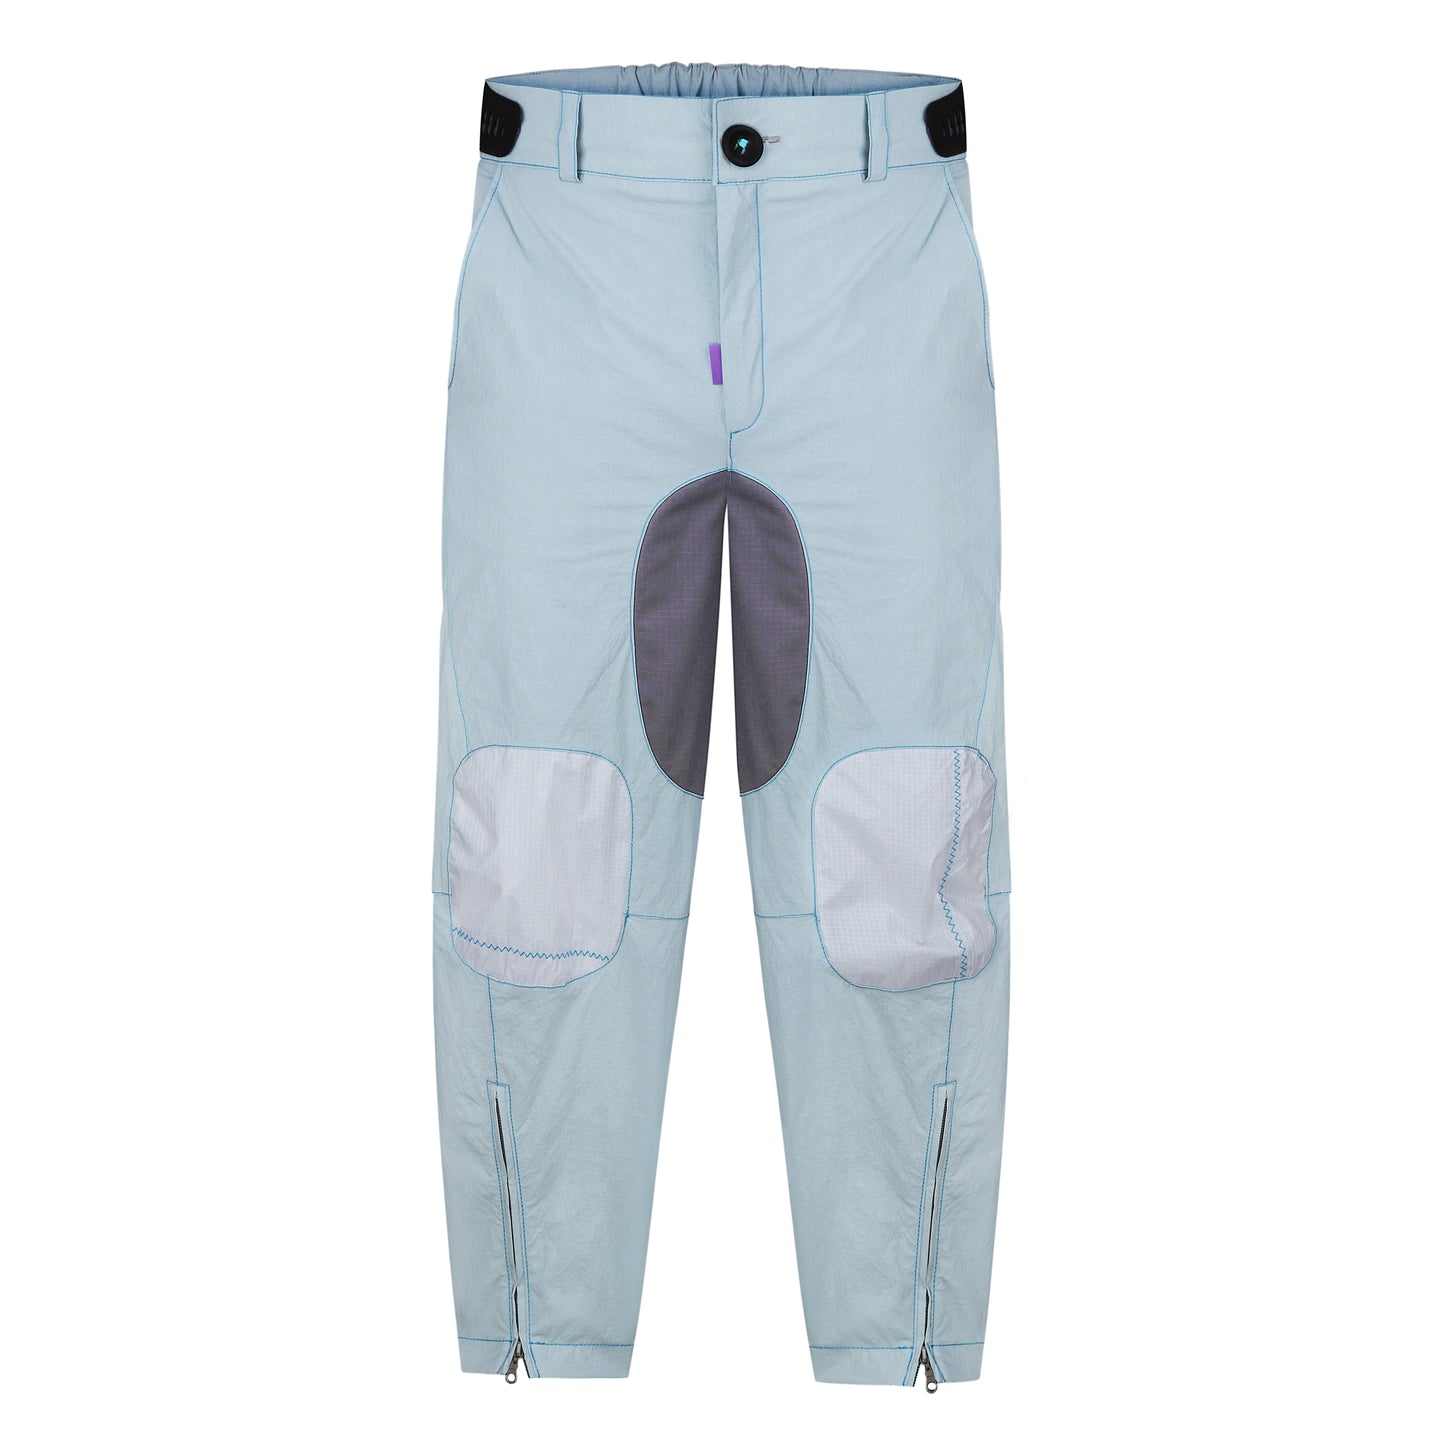 Designer waterproof men's pants from REwind